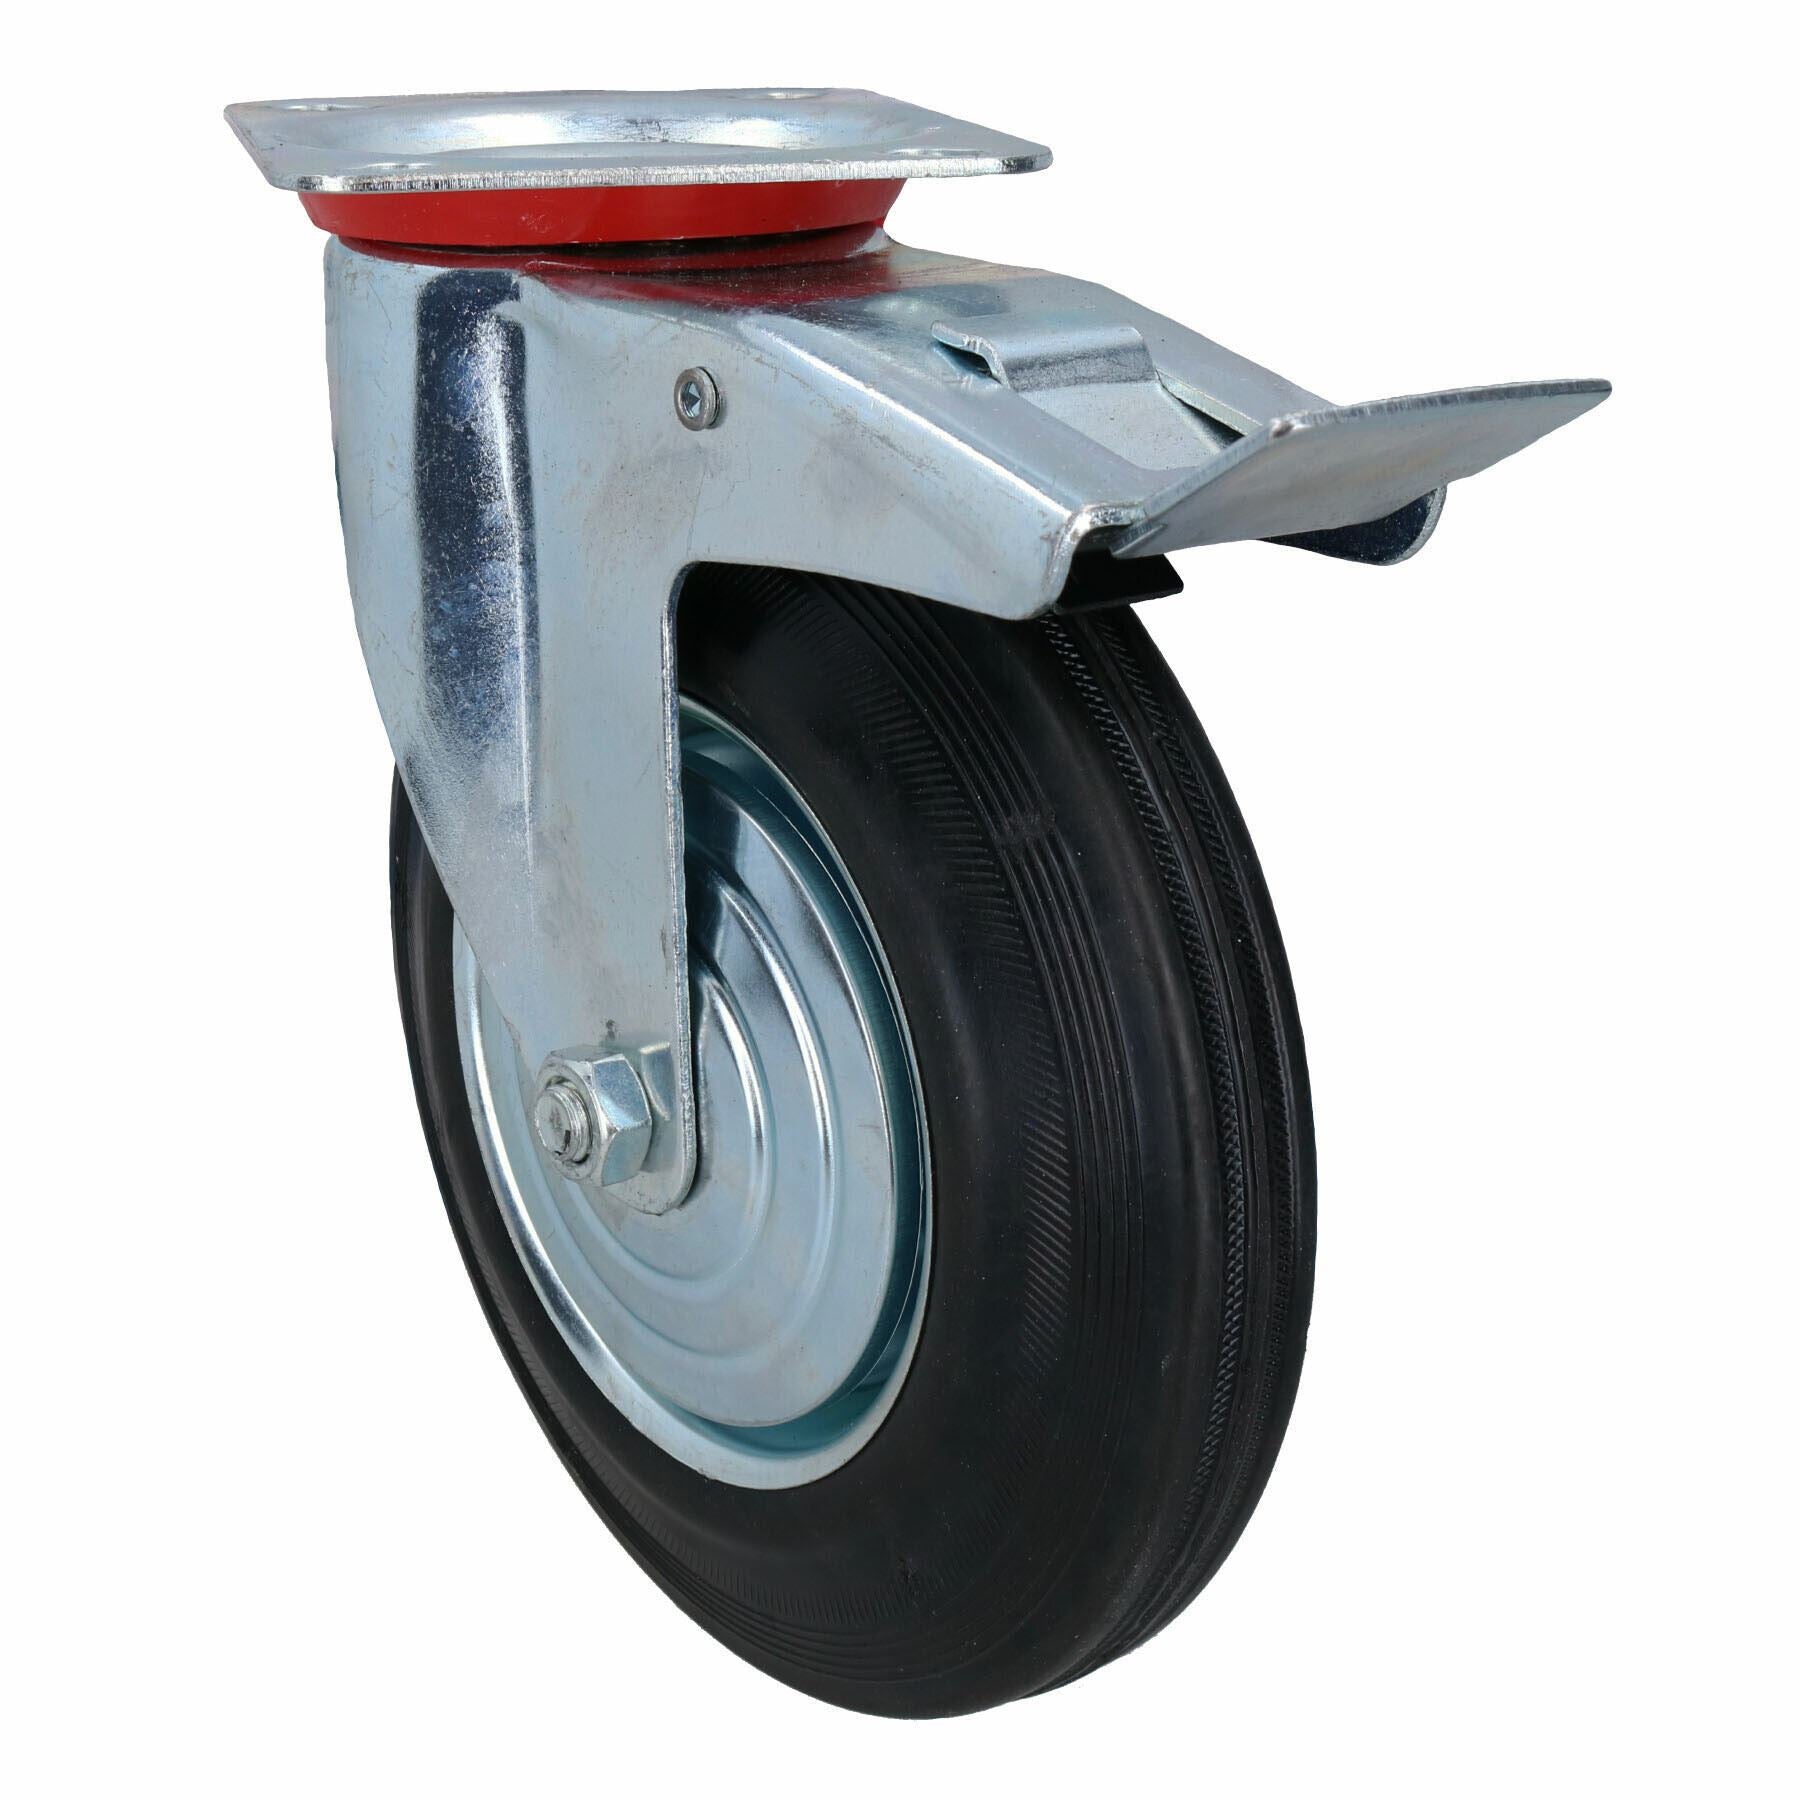 200mm (8in) HD Braked Castor Wheel Rubber Tyre For Trolleys Trucks Carts